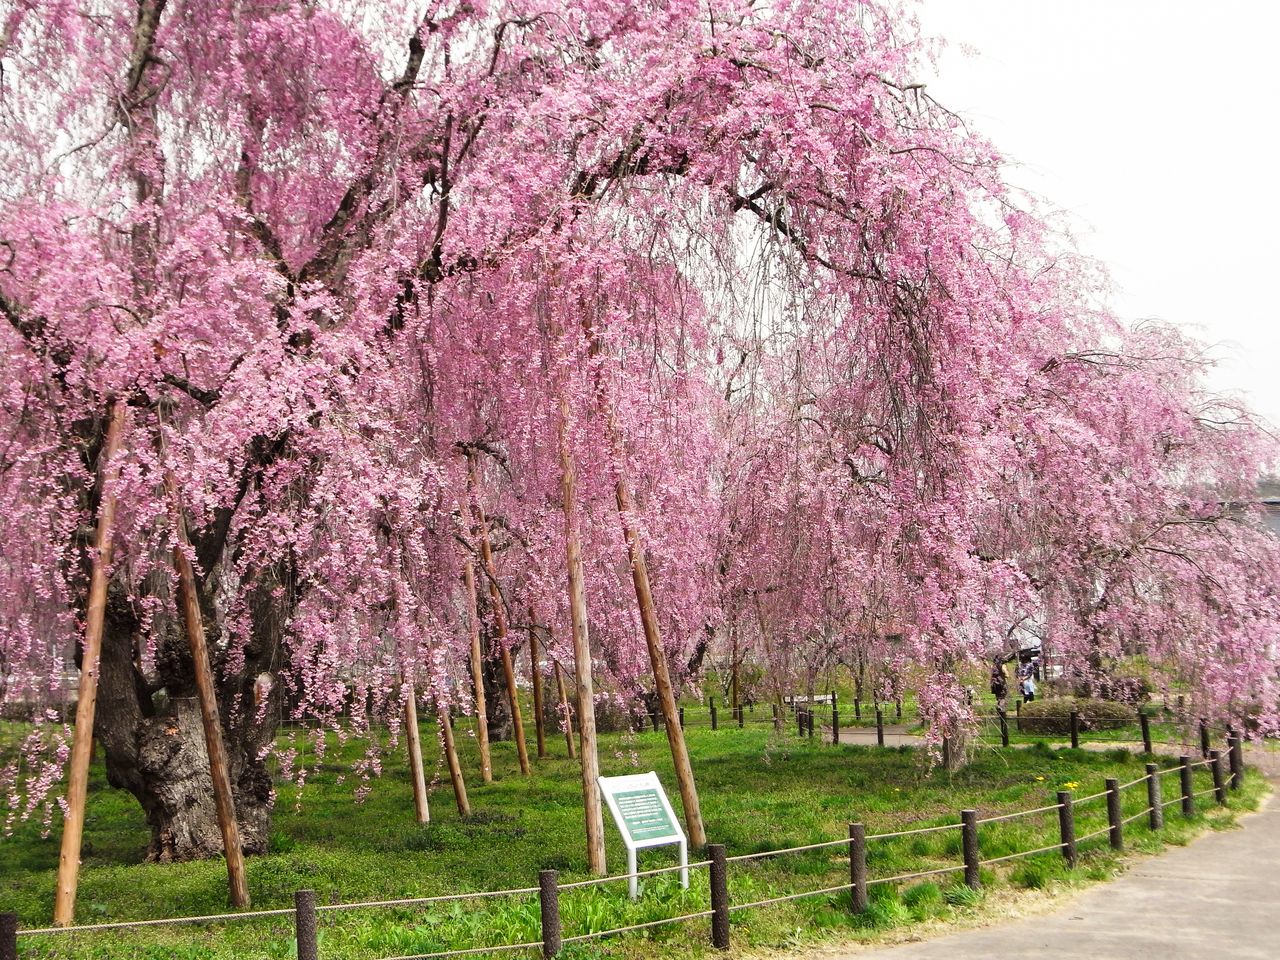 Las ramas de los cerezos llorones de la variedad yaebeni shidarehiganzakura trazan una hermosa curva cuando han florecido por completo (imagen cortesía de la Asociación de Turismo y Convenciones de Morioka).